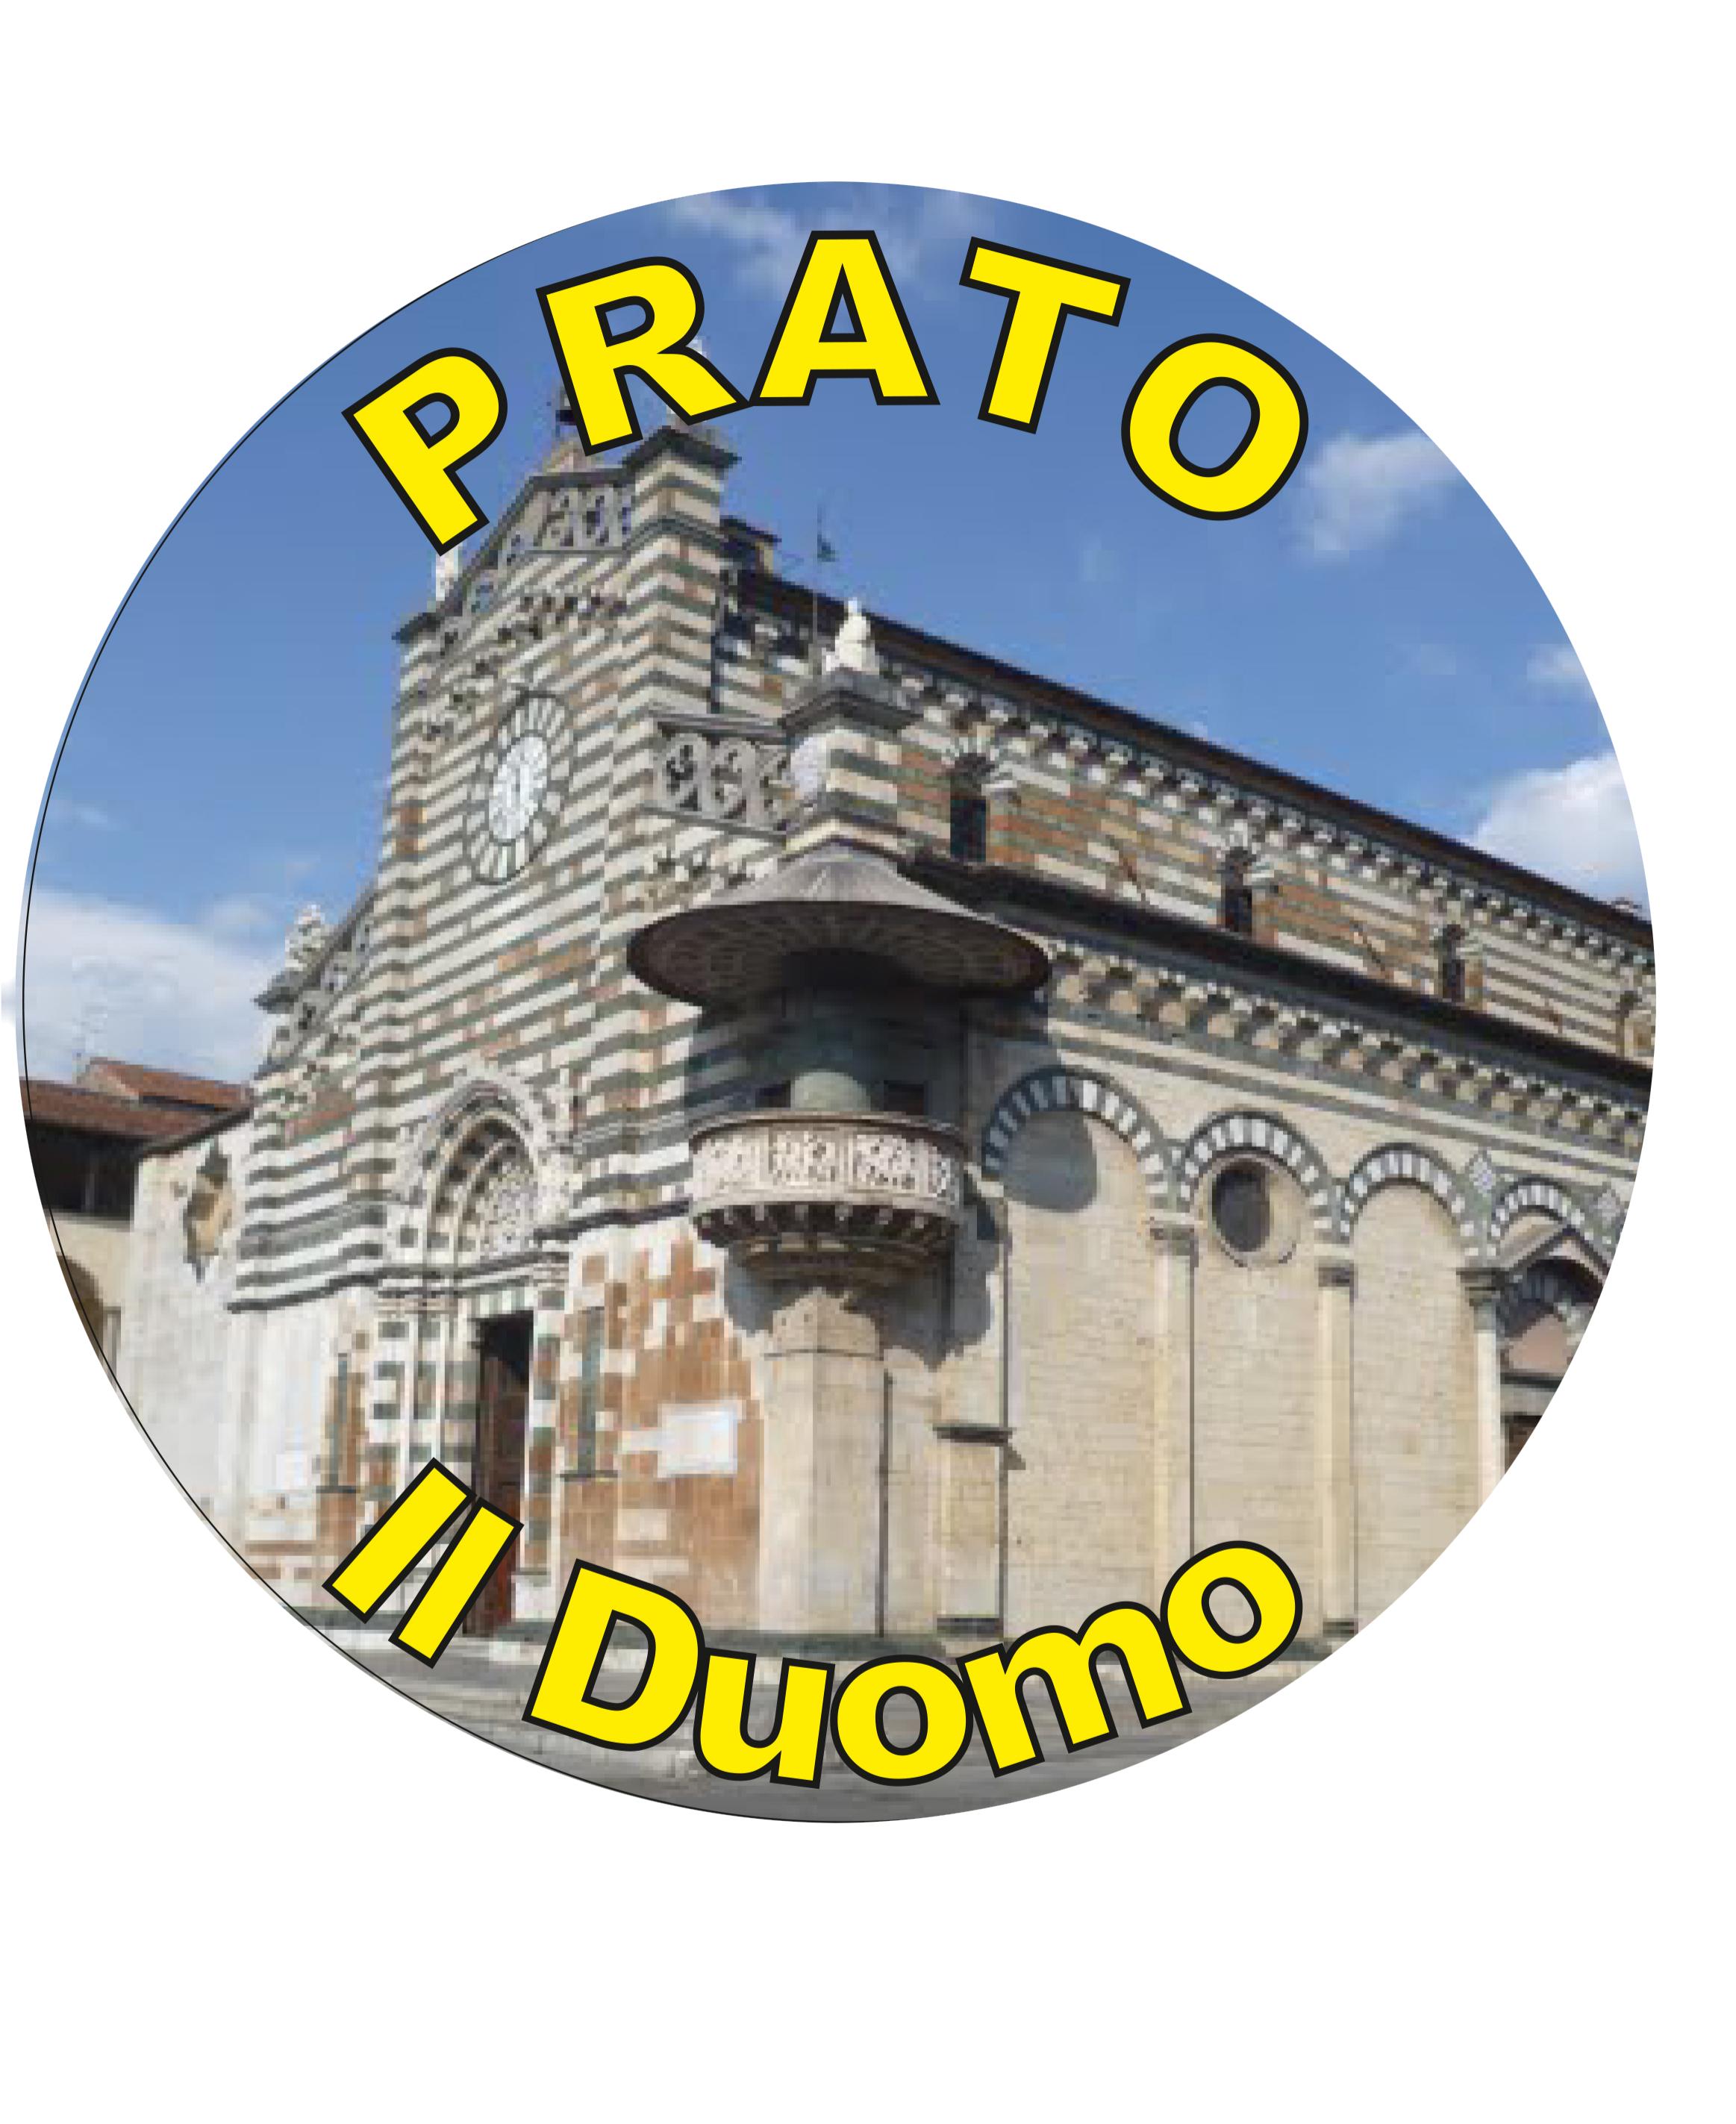 99-08-41-3002 Adesivi Prato Tondo mm30 Duomo CONFEZIONI DA 10 PZ